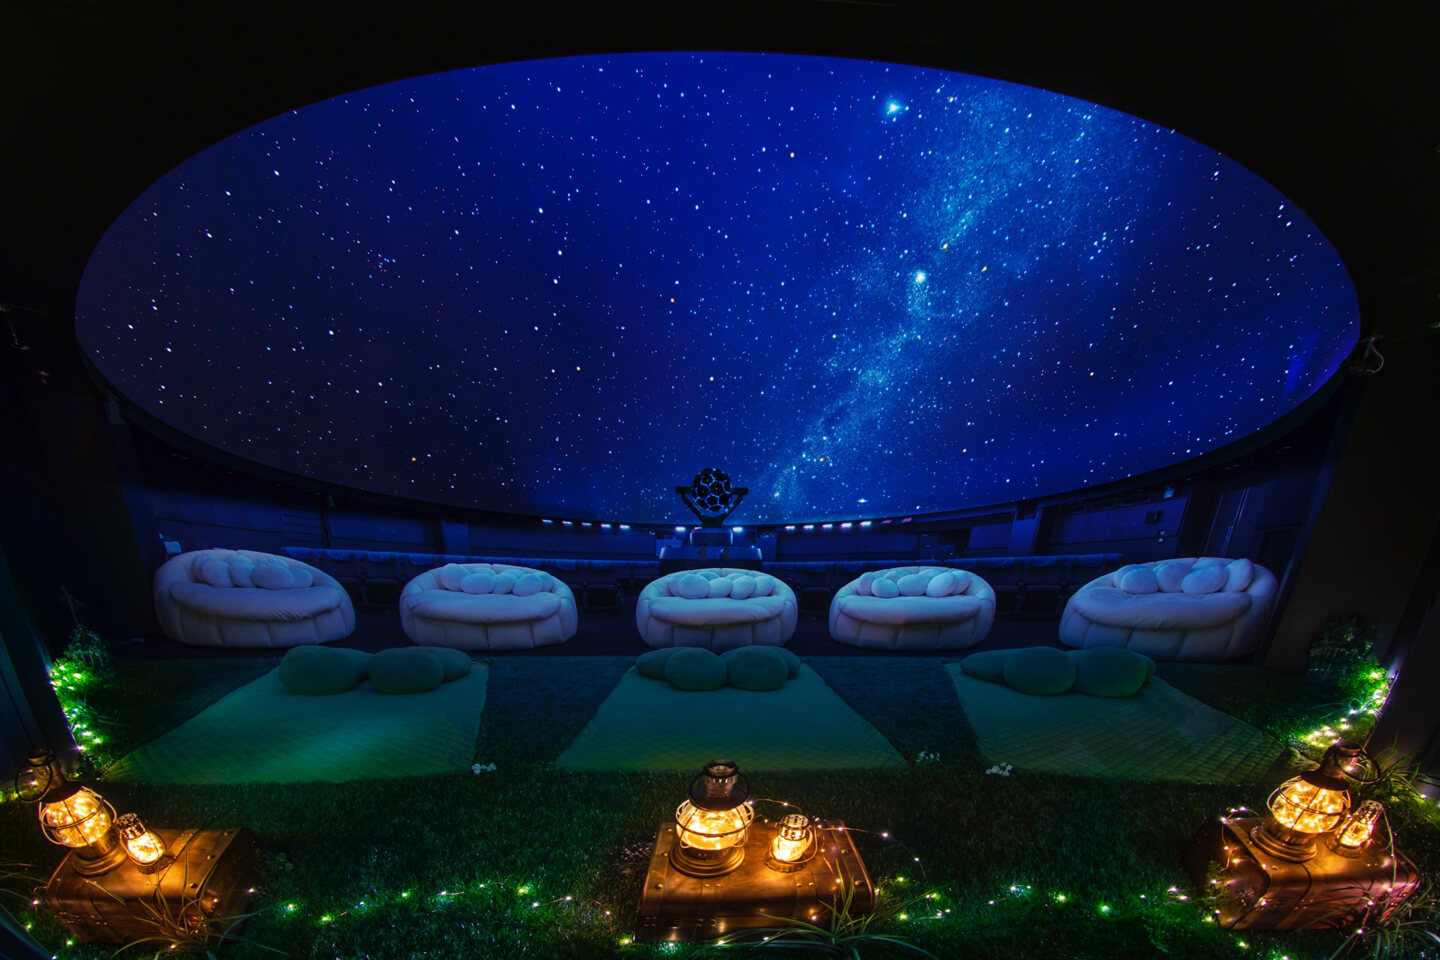 Photograph: Manten’s dome